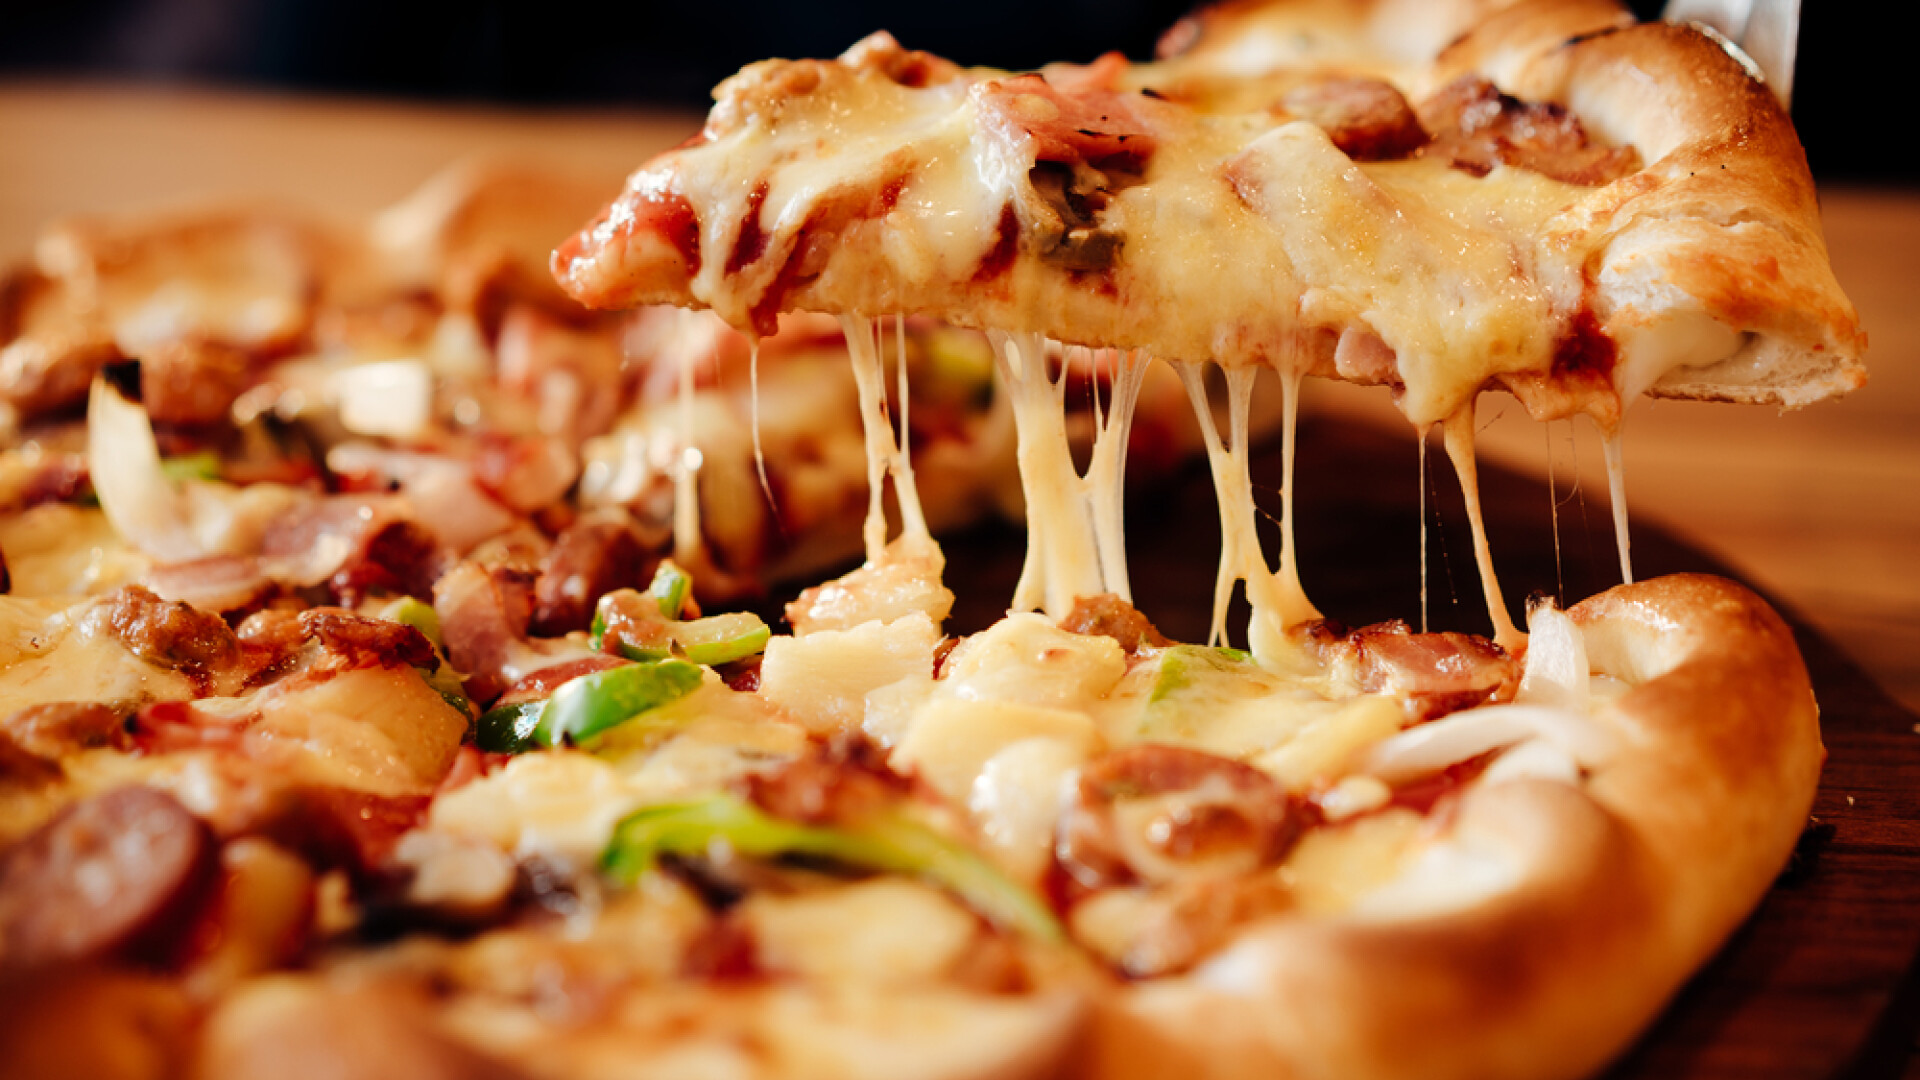 Un tânăr a murit după ce a mâncat o felie de pizza comandată printr-un serviciu de livrări. Ce s-a aflat la autopsie